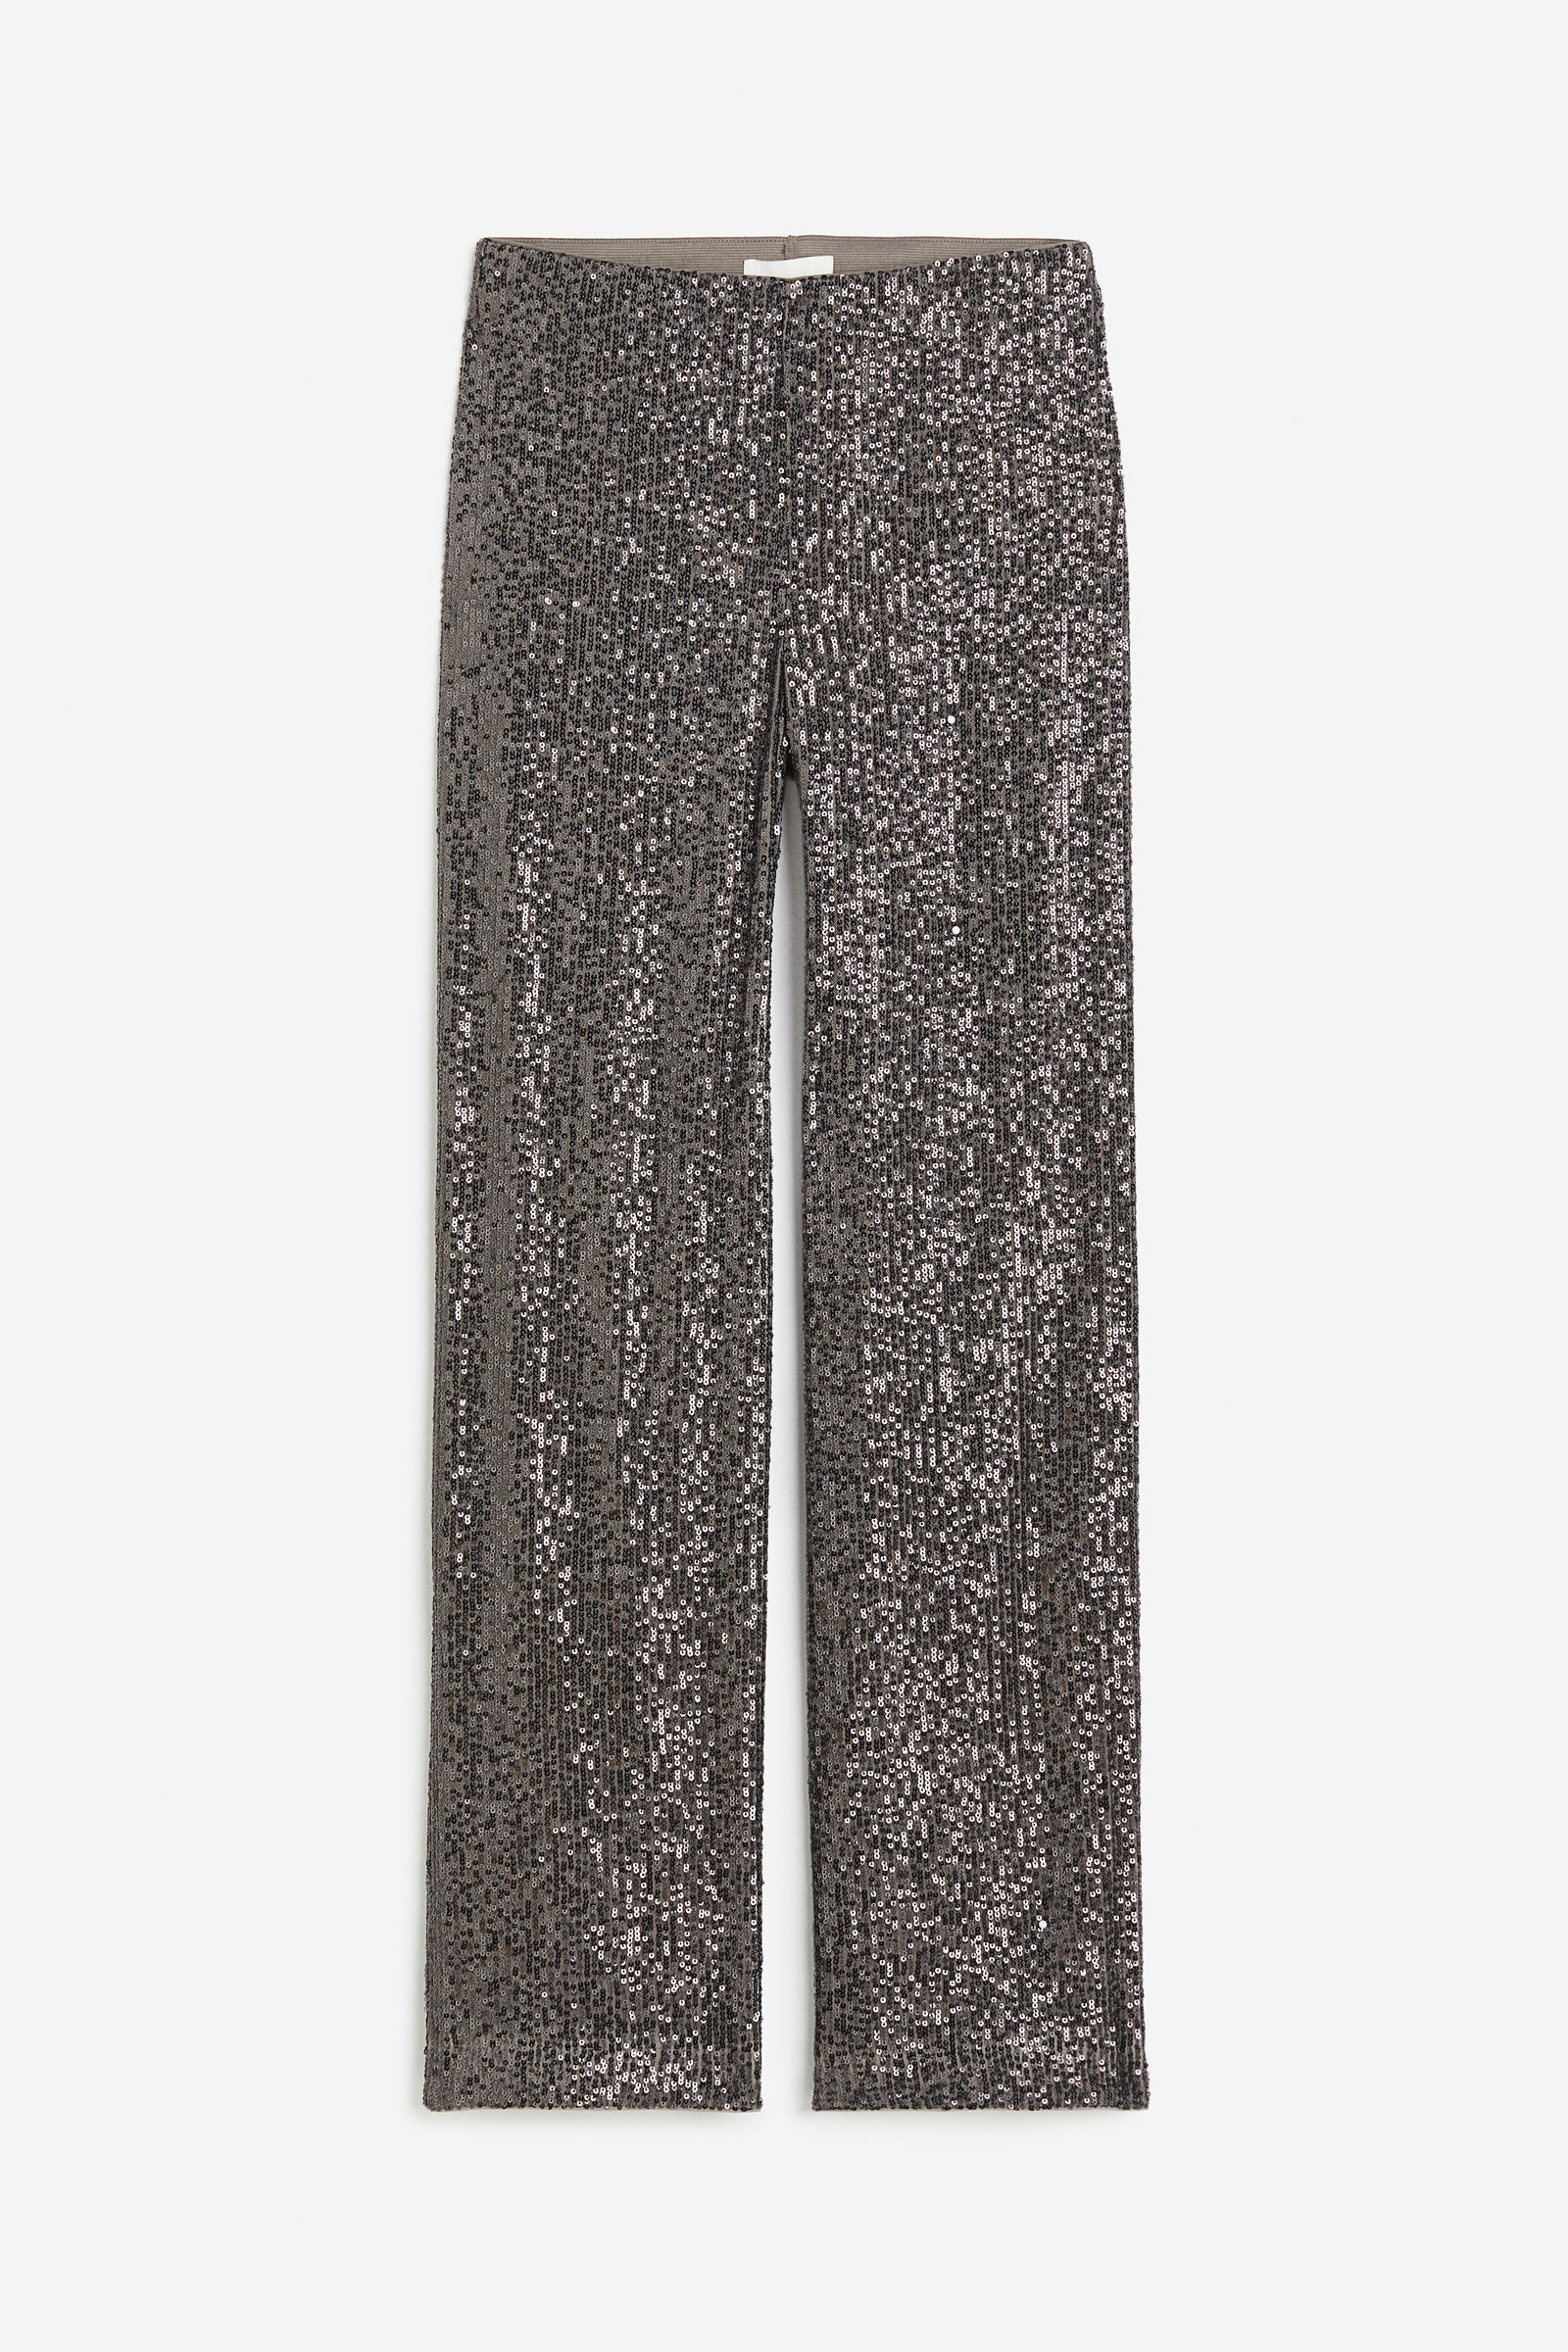 Pantalones para mujer de lino, tobilleros y más - H&M EC